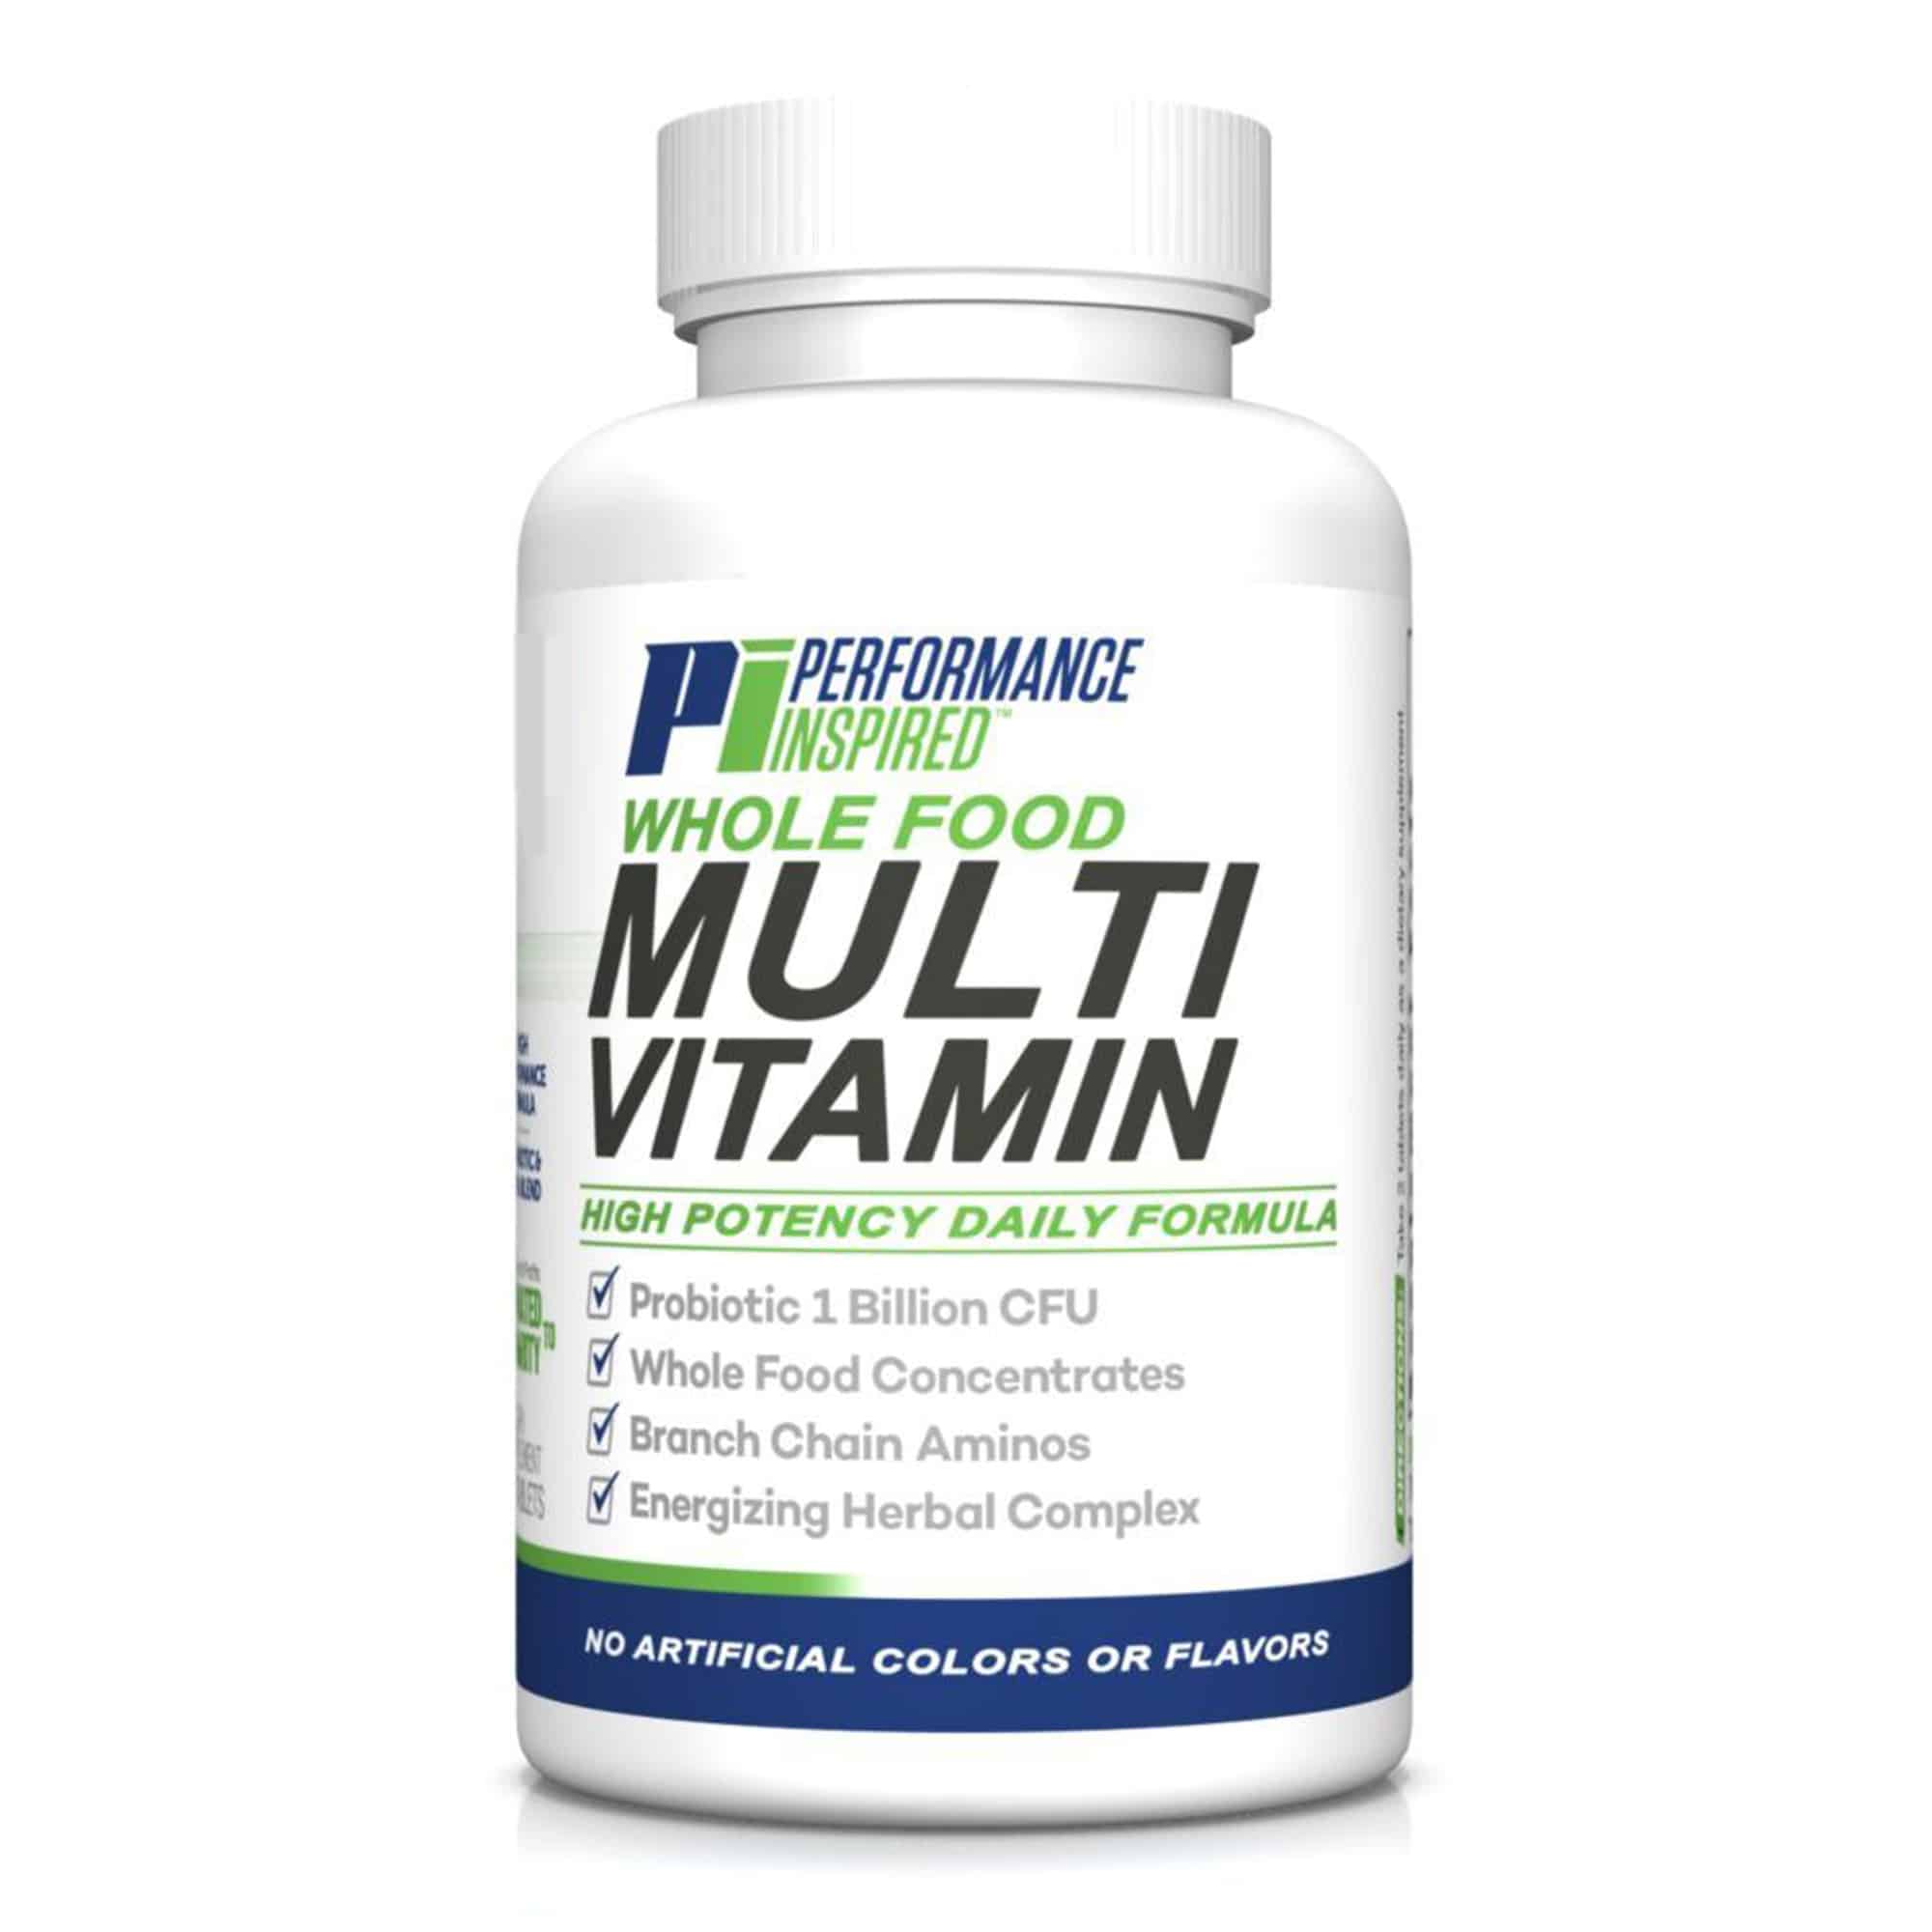 Vitamin мультивитамины. Мультивитамины. Витамины мультивитамины. Мультивитамины таблетки. Мультивитамины спортивные.